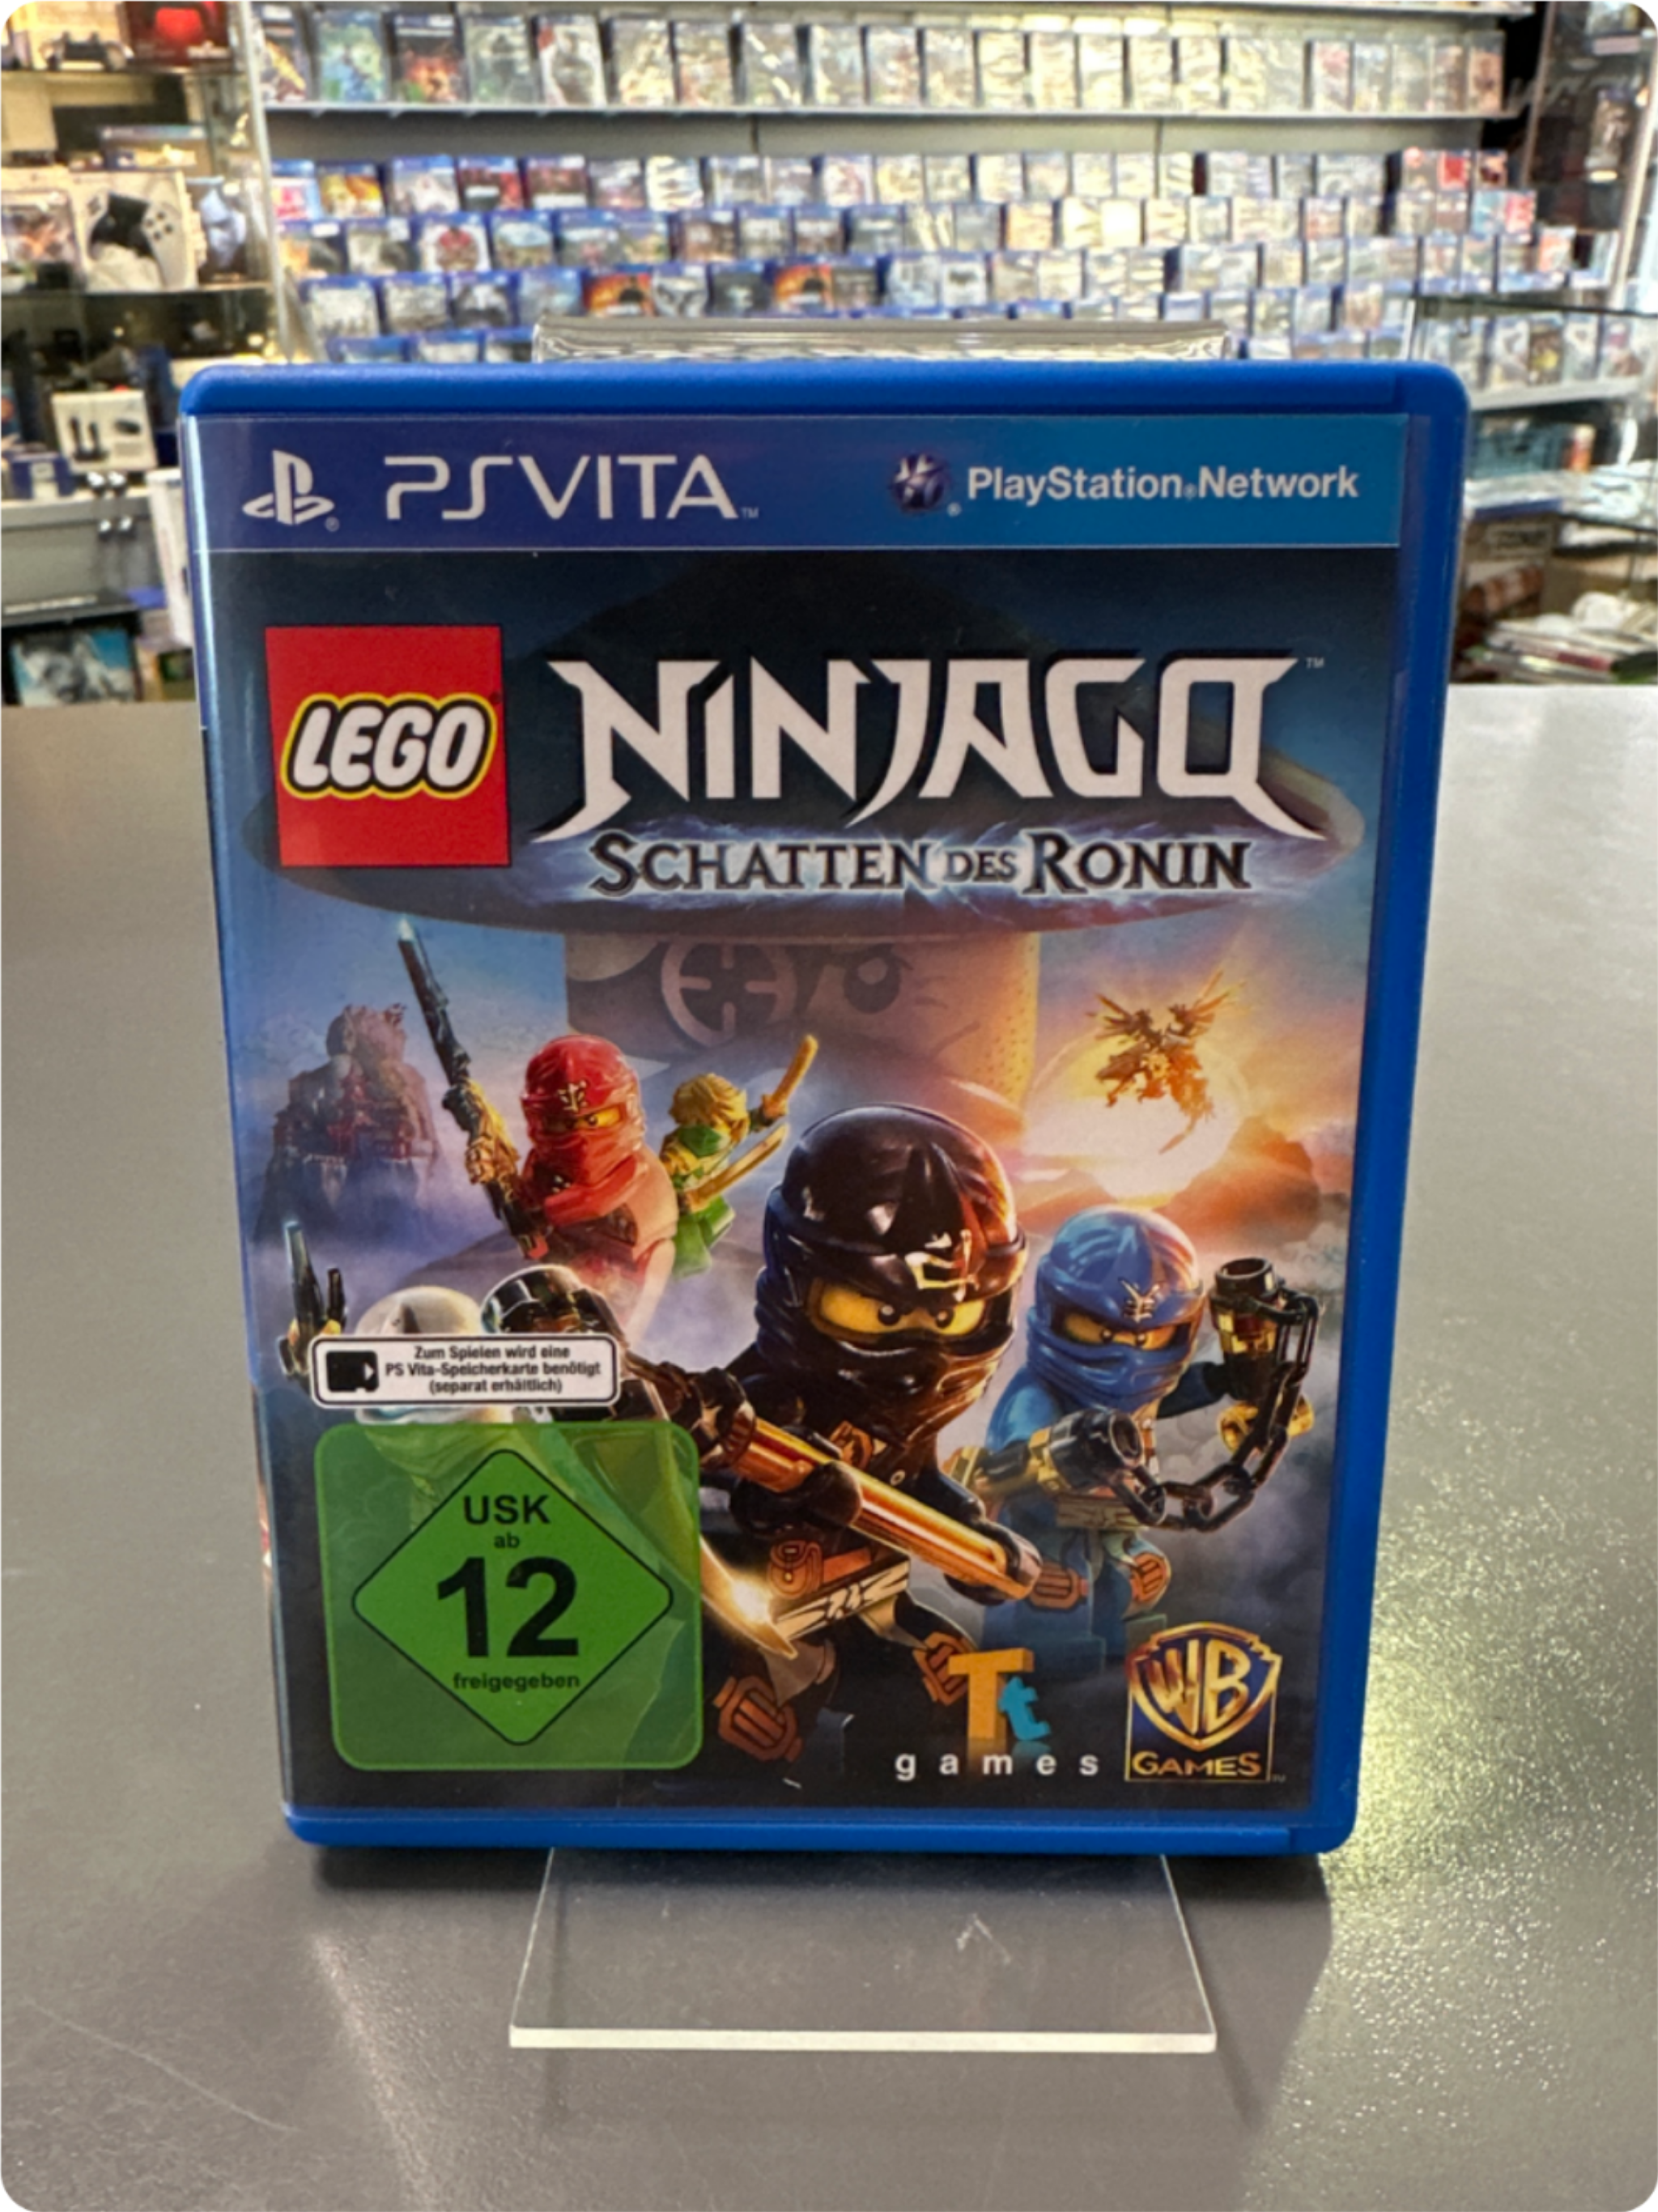 LEGO Ninjago - Schatten des Ronin - [PS Vita]